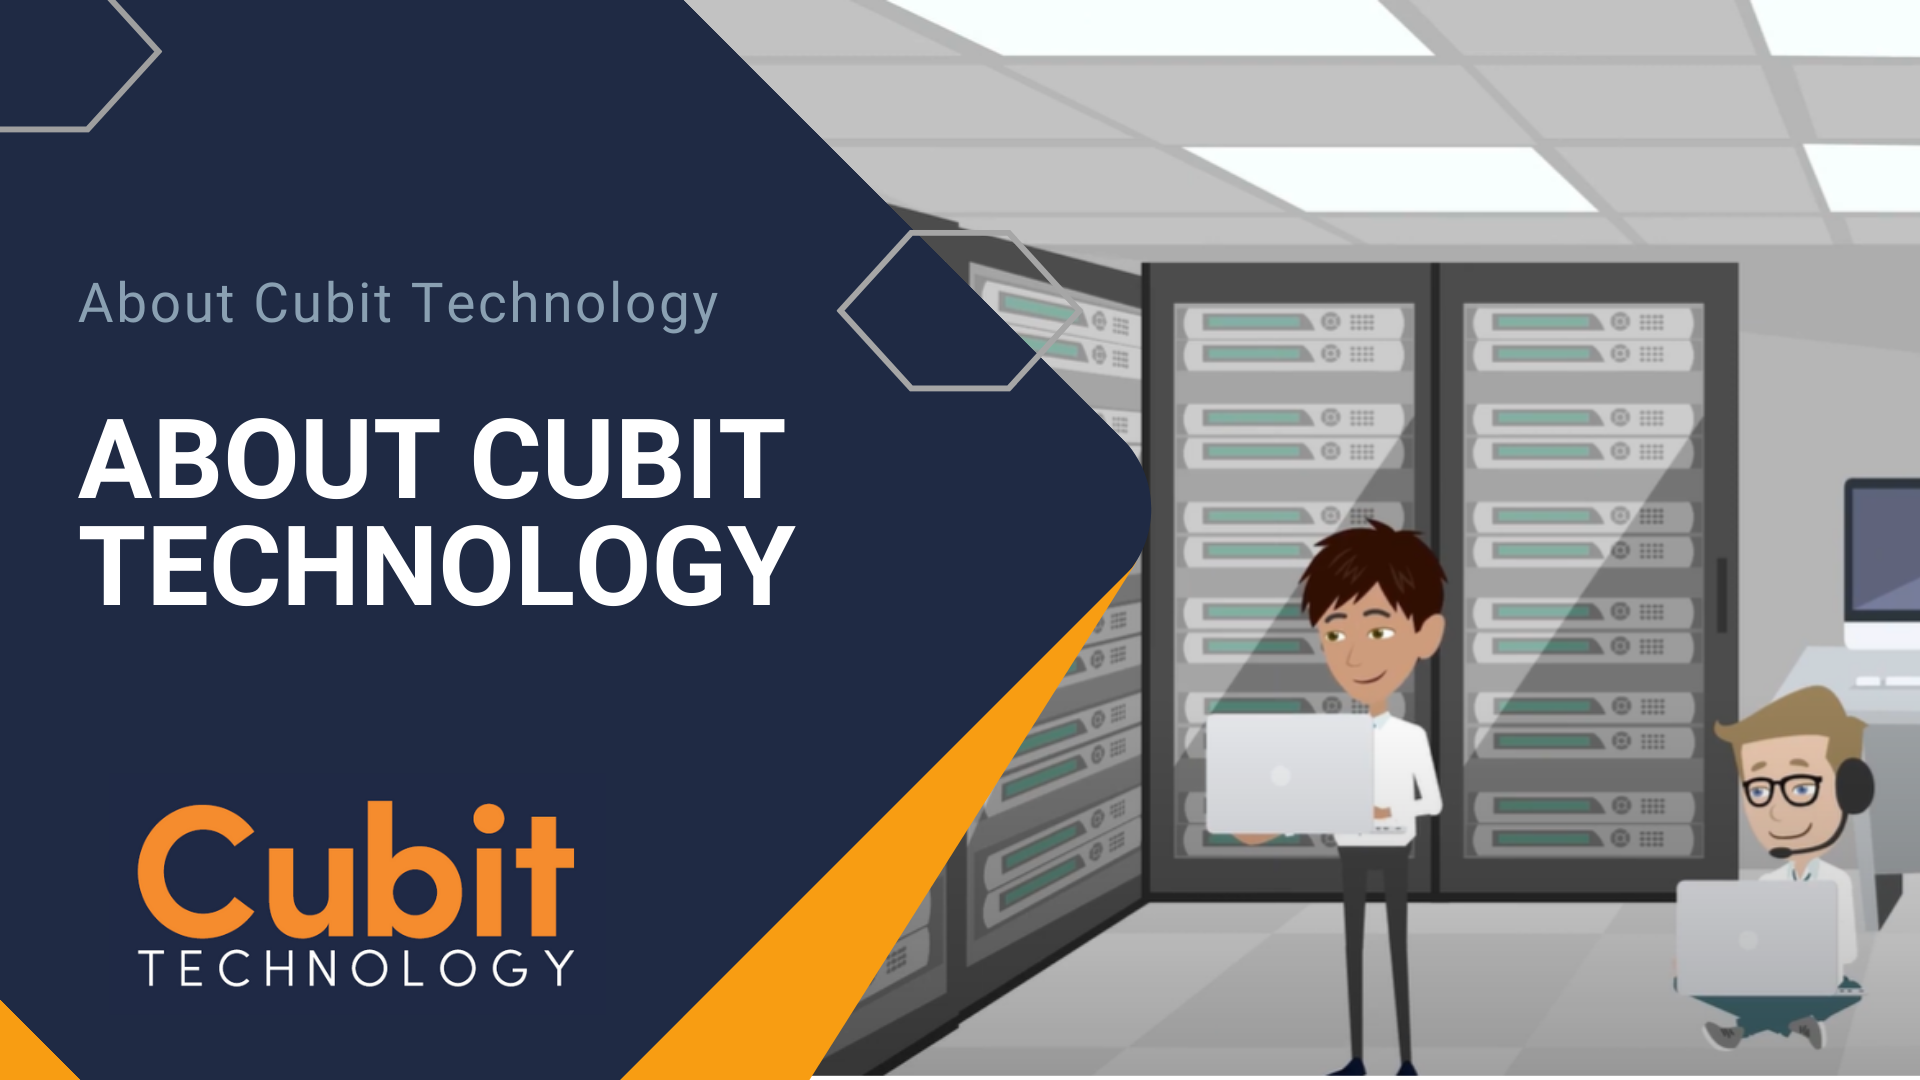 About Cubit Technology